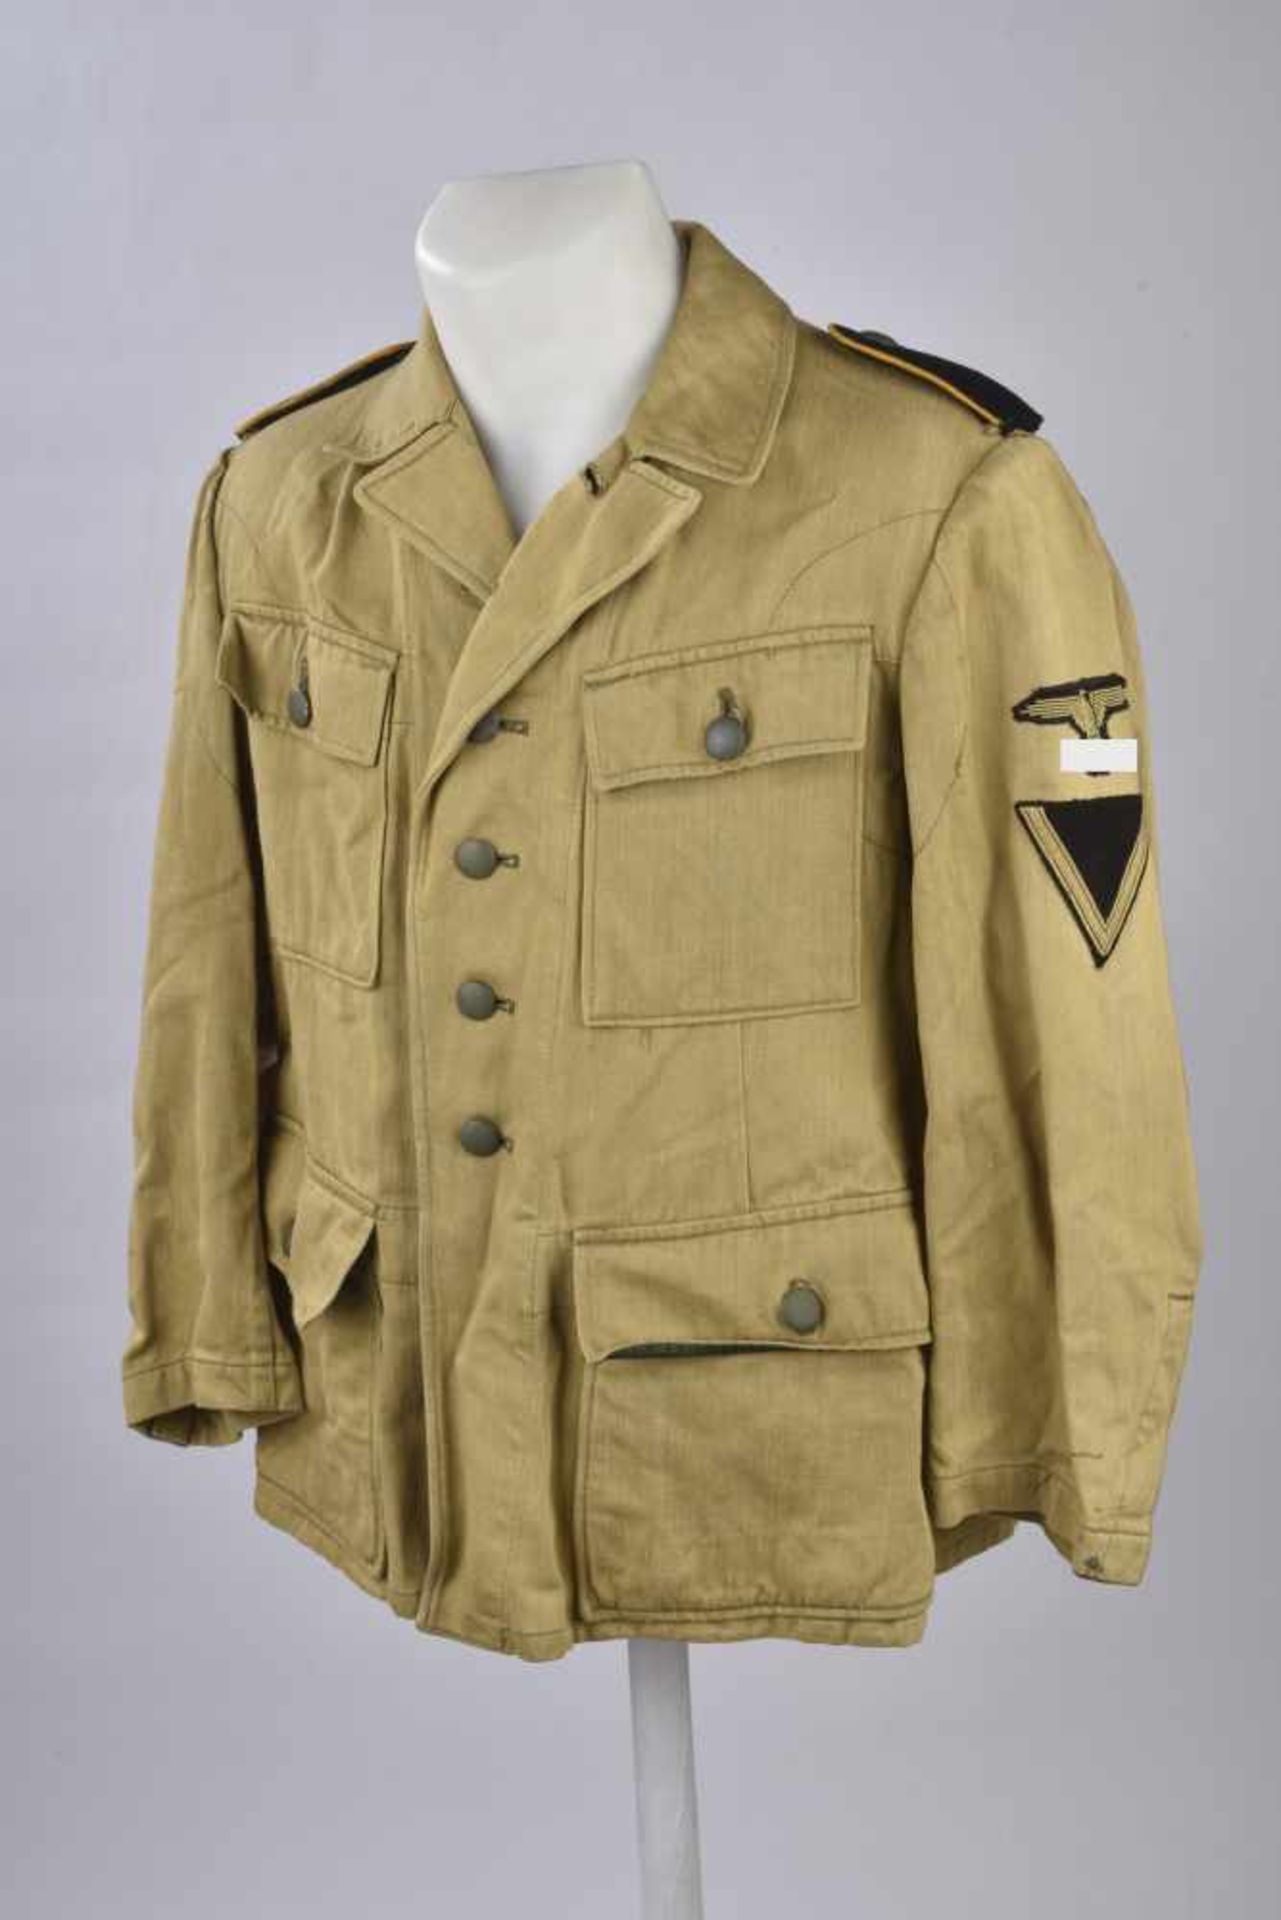 Veste tropical de la Waffen SSVareuse en tissu coton sable, tous les boutons sont présents.